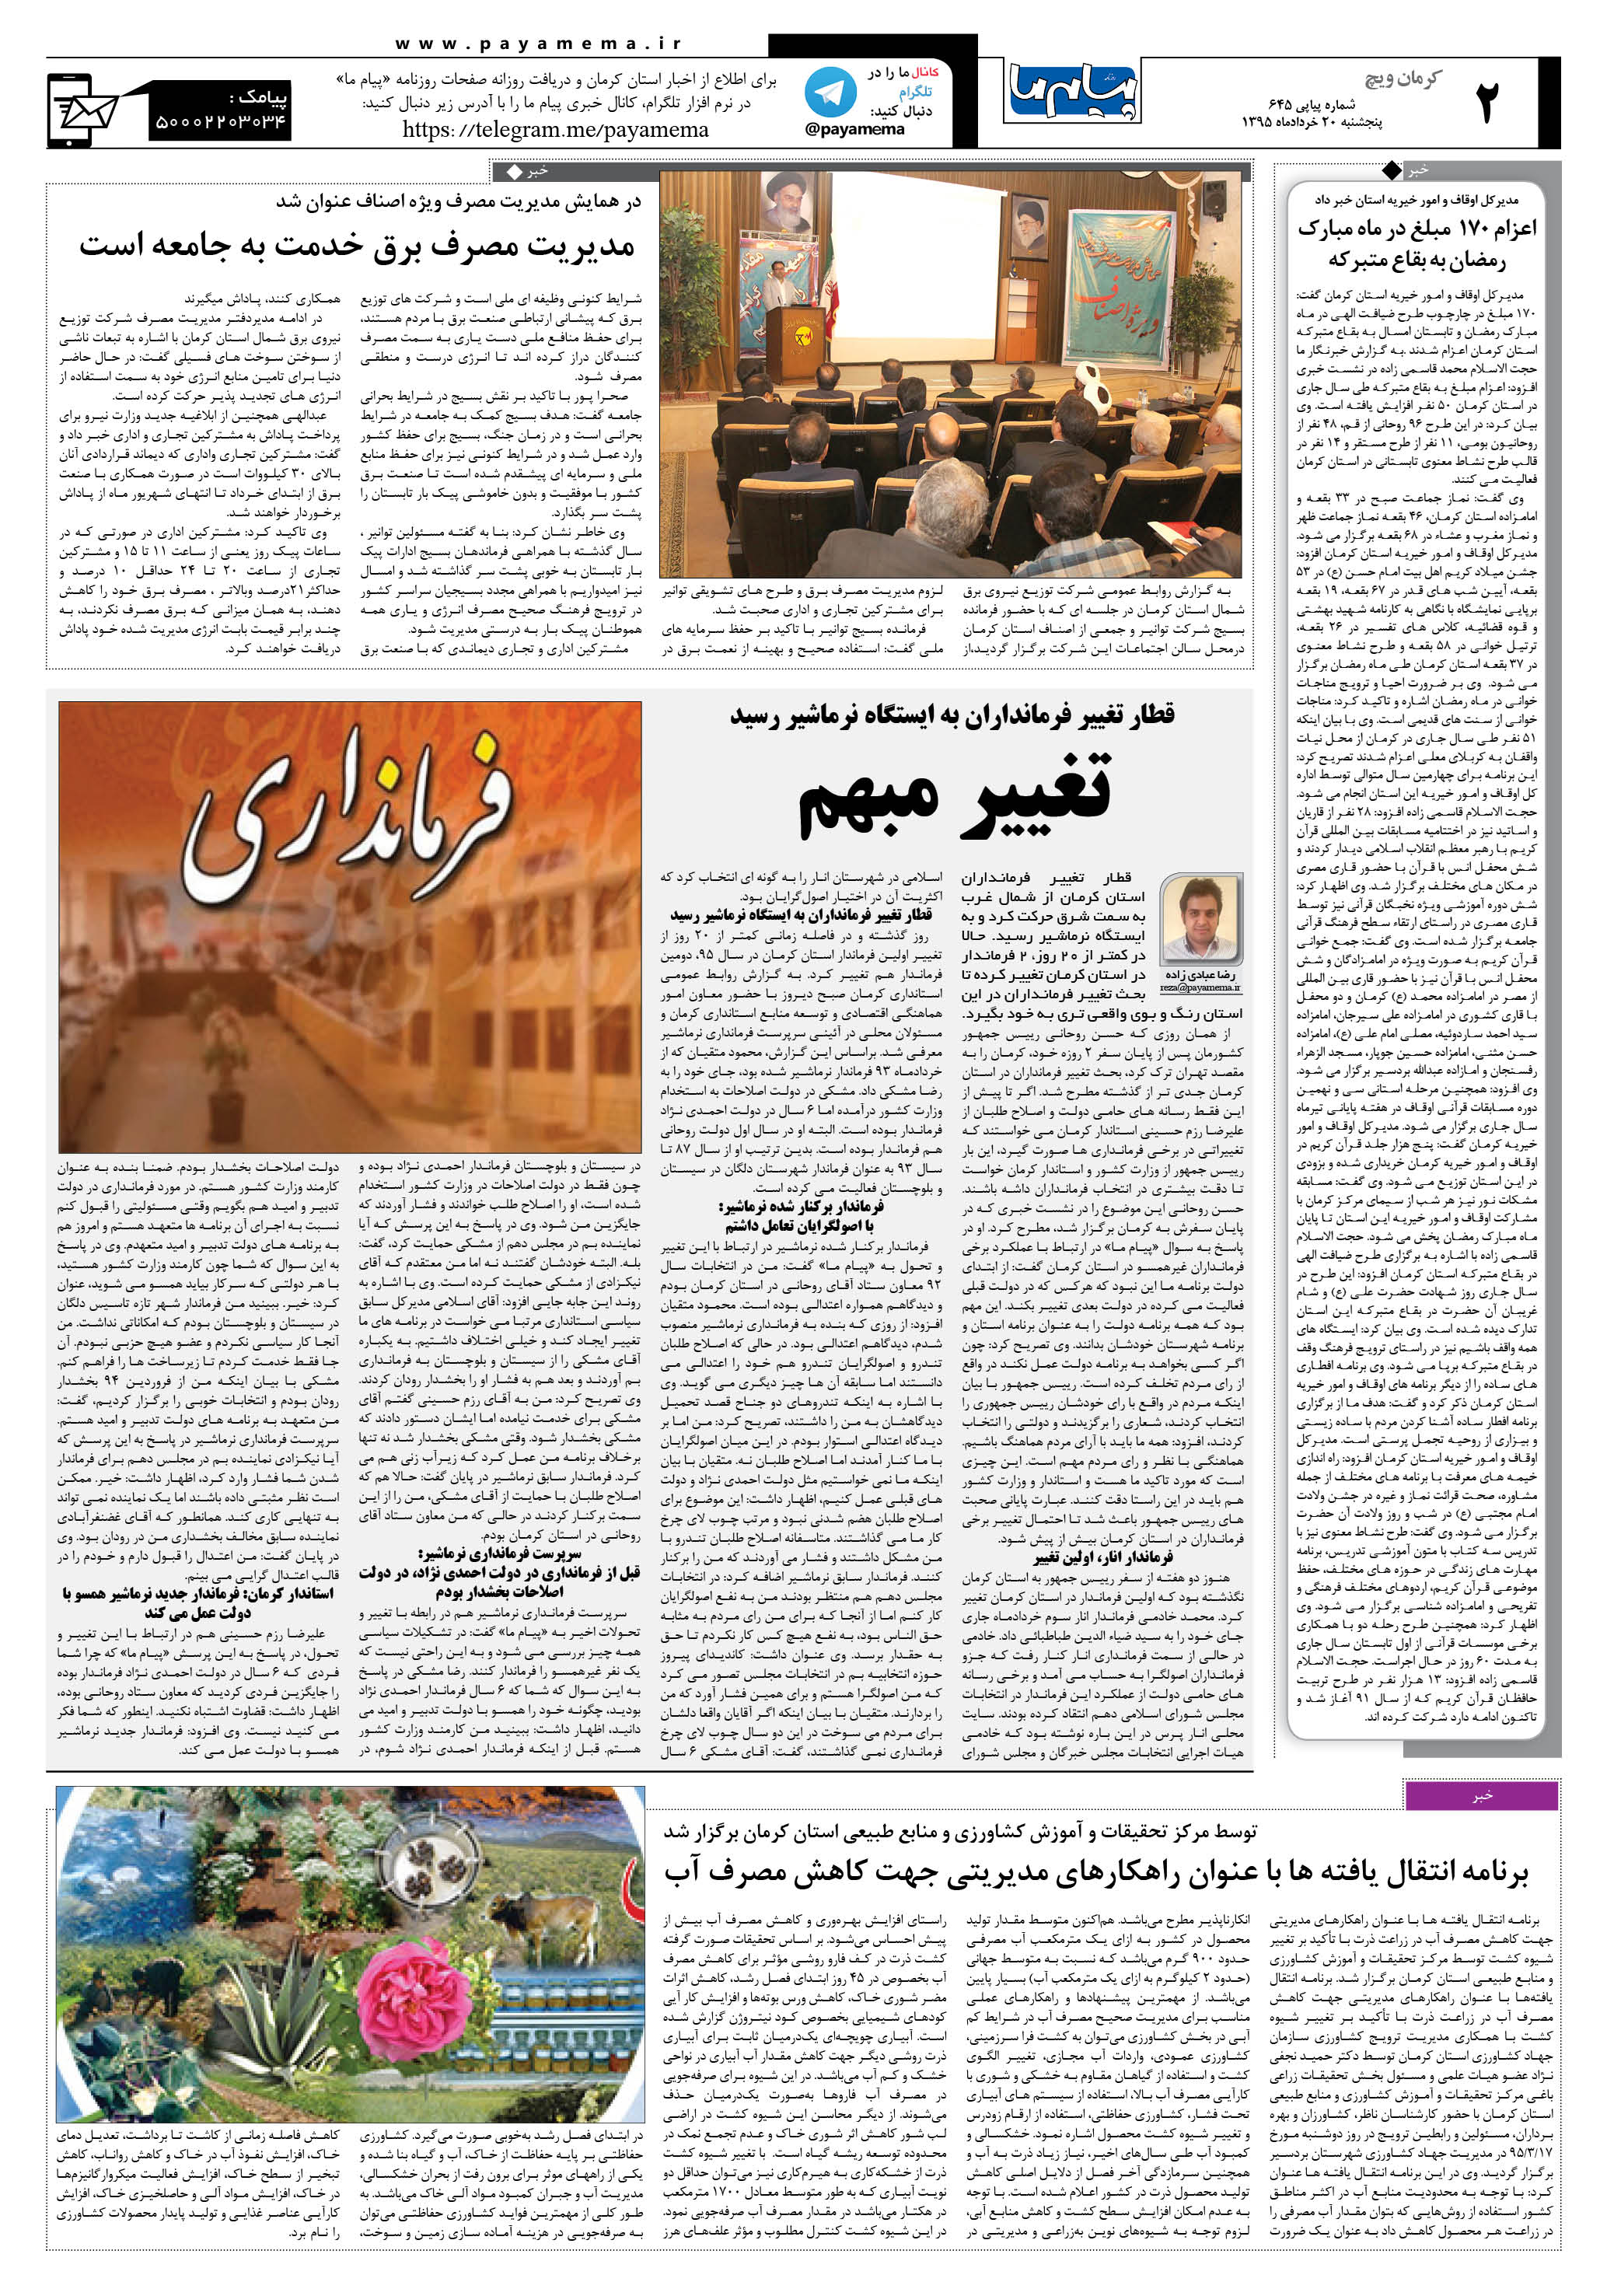 صفحه کرمان ویج شماره 645 روزنامه پیام ما